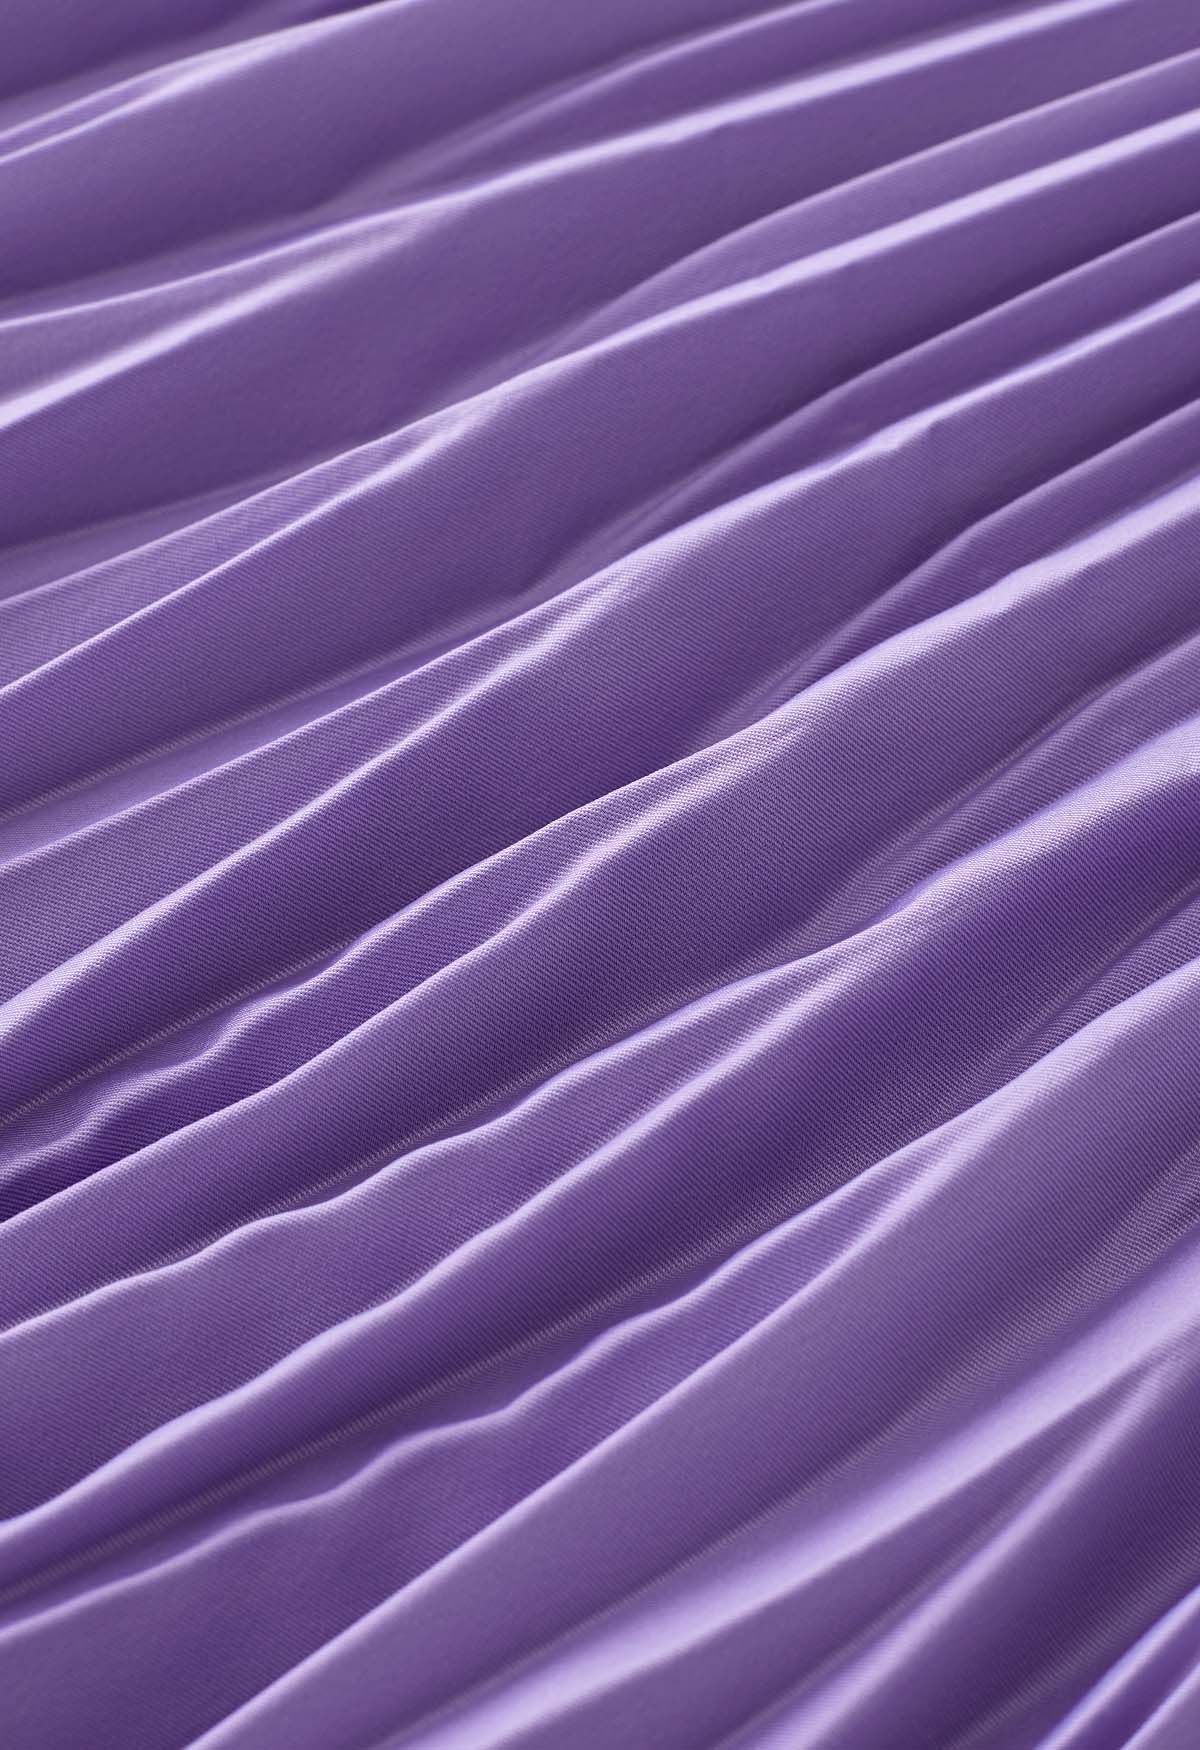 Jupe mi-longue plissée irrégulière en lilas